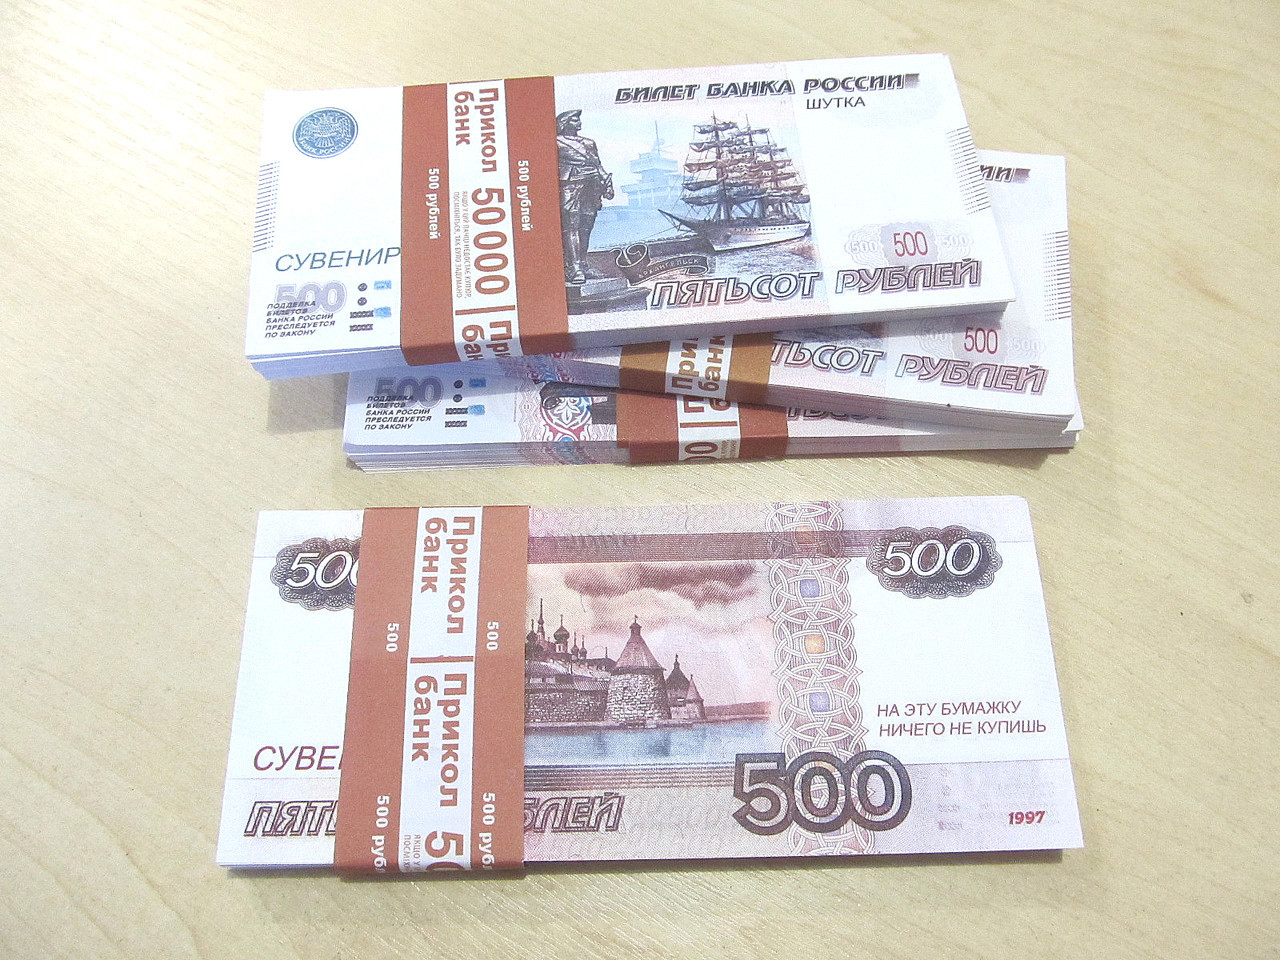 Пачка 500 руб. Сувенирные деньги. 500 Рублей пачка. Пачка денег 500 рублей. Пачка по 500 рублей.